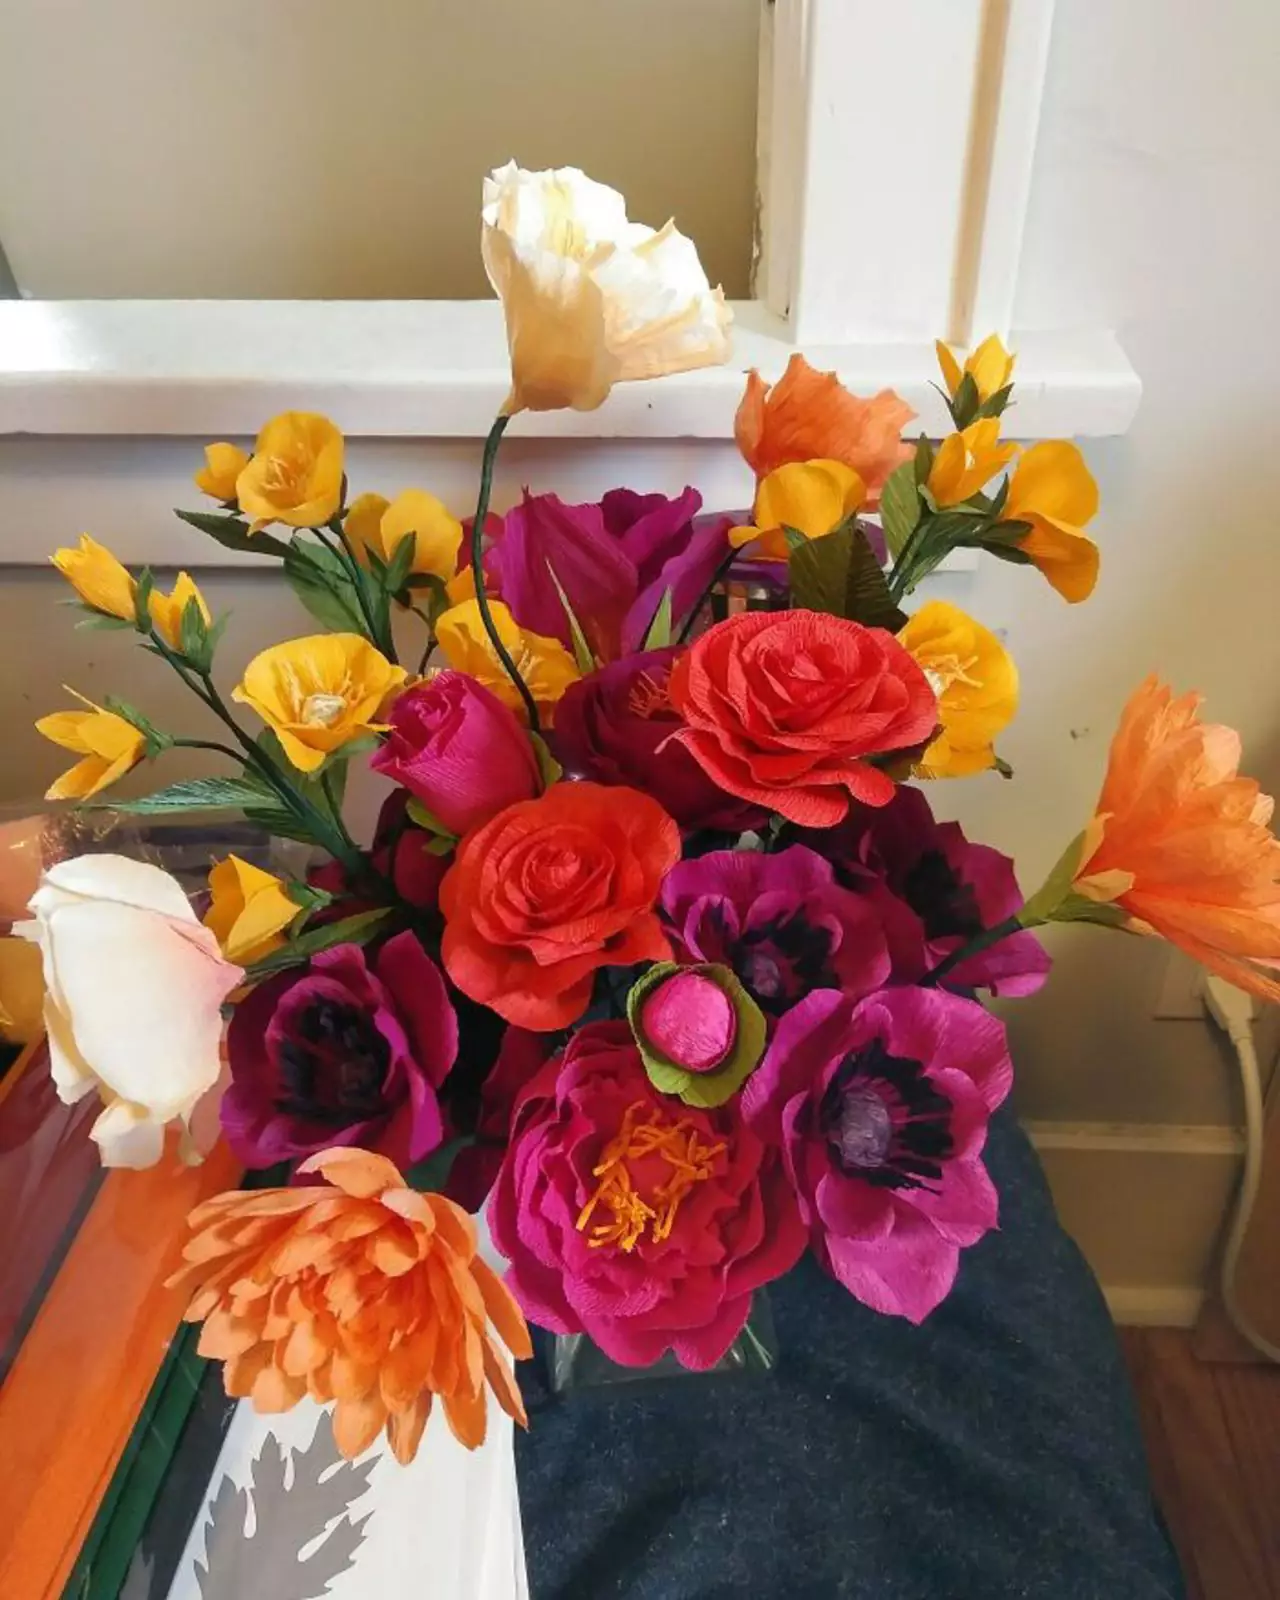 "Я начал делать цветы из гофрированной бумаги несколько недель назад и думаю, что смогу сделать все цветы для своей свадьбы в следующем августе".